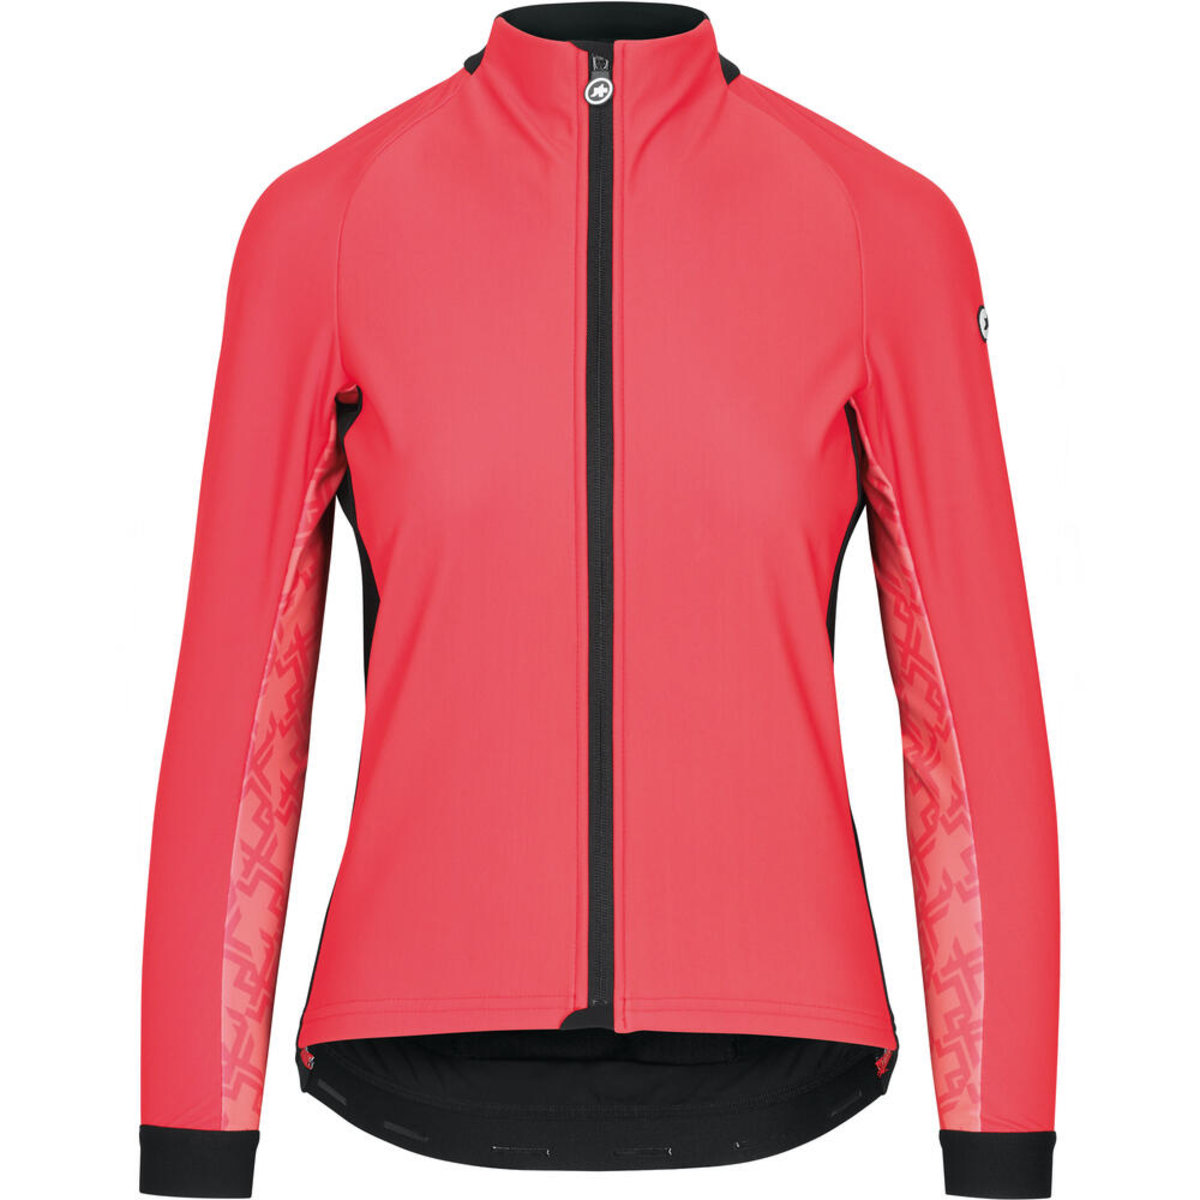 Куртка ASSOS Uma GT Wind Jacket, длин. рукав, женская, розовая, L фото 1